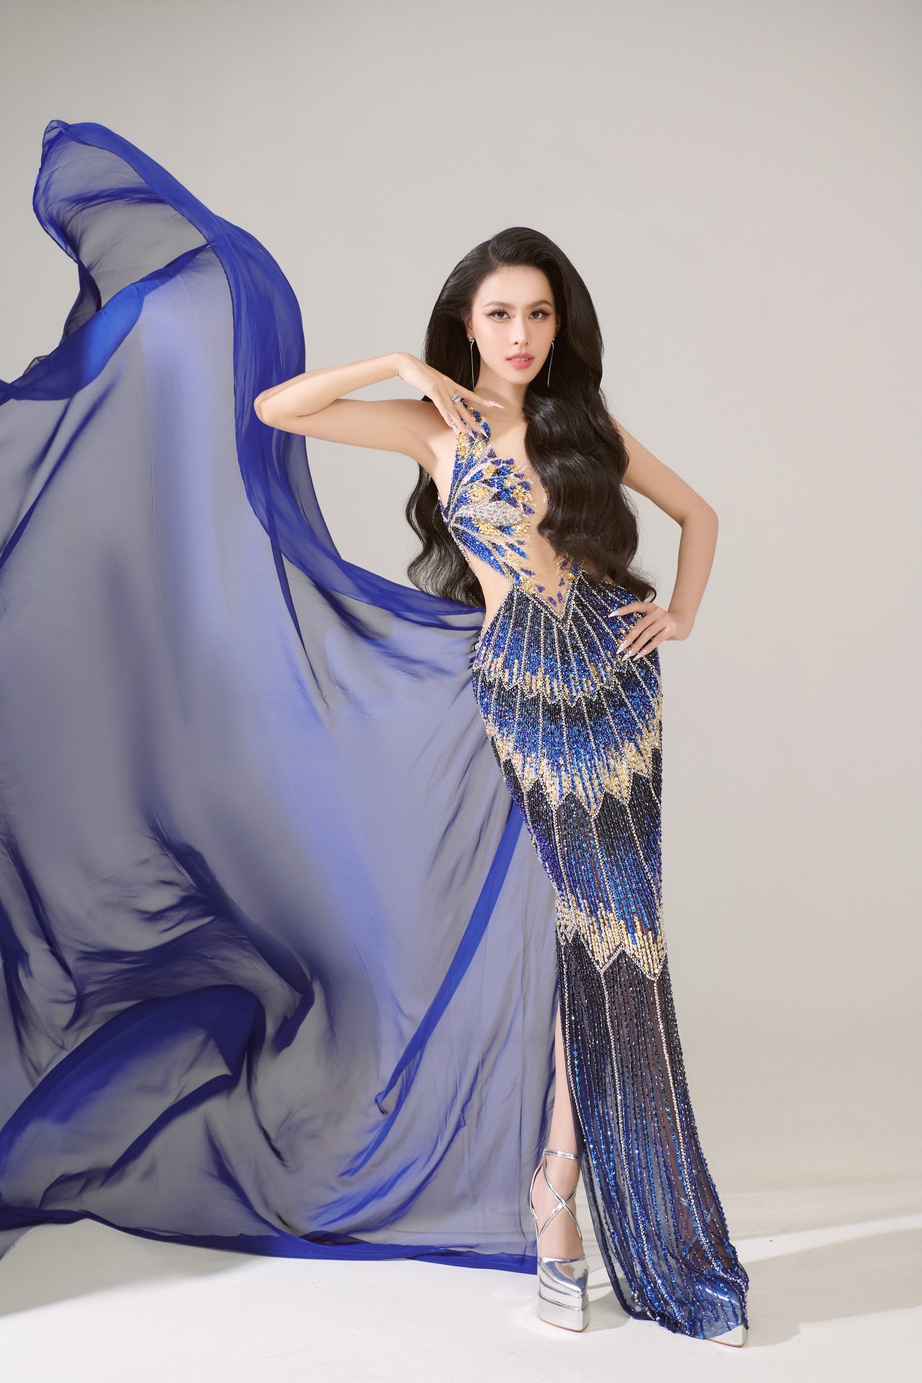 
Á hậu Ngọc Hằng được đánh giá ra sao tại Miss Intercontinental 2023 - Ảnh 2.